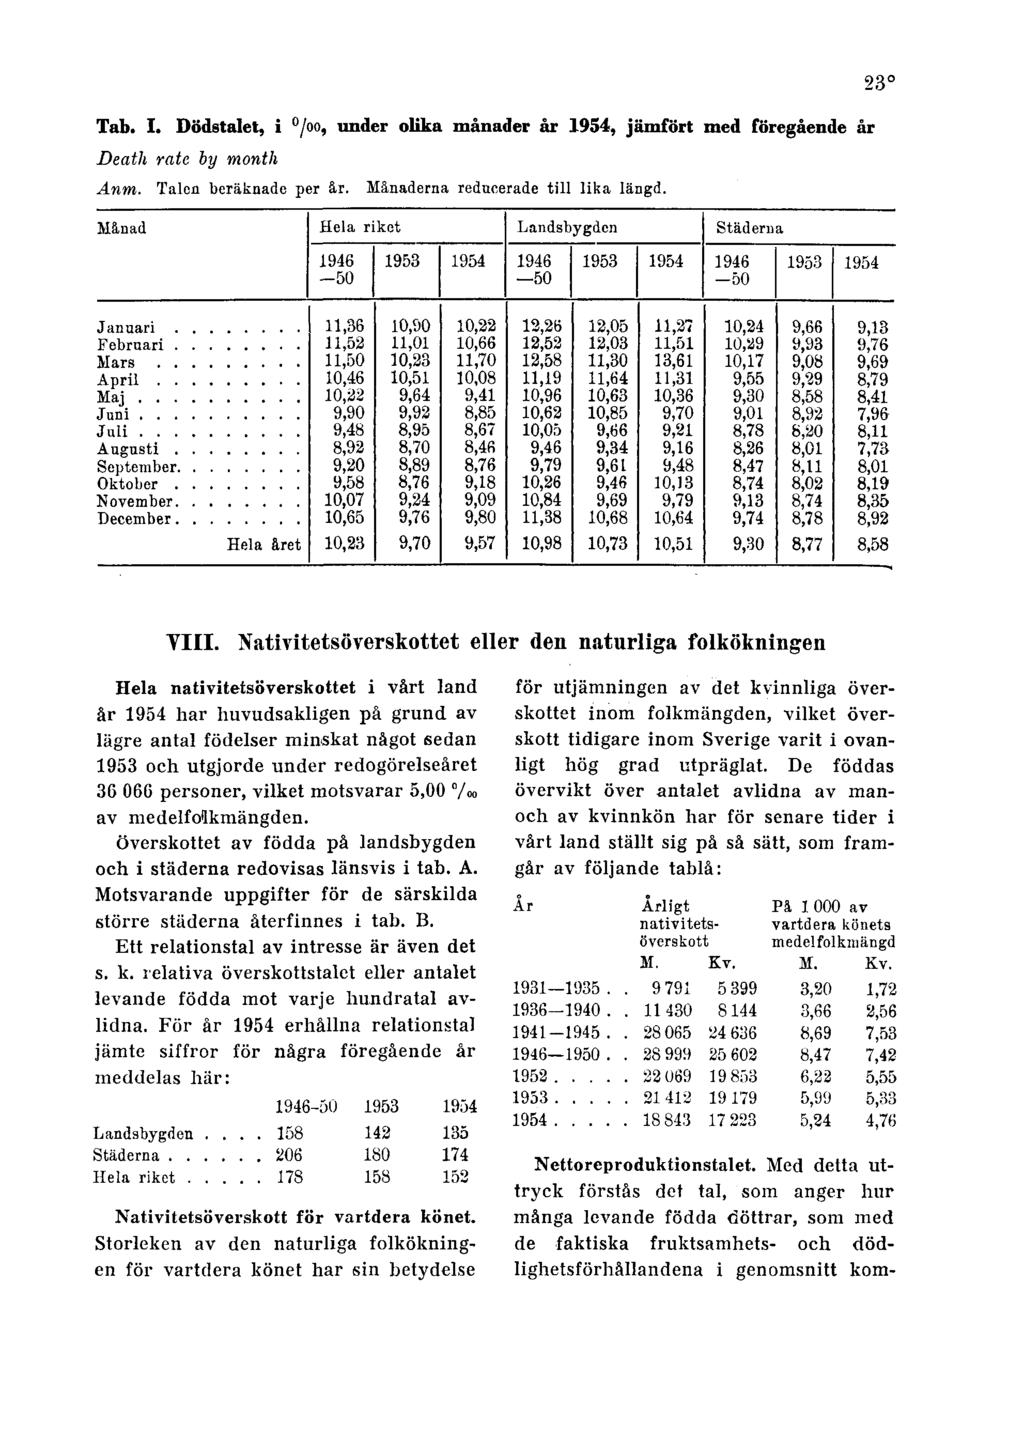 23 Tab. I. Dödstalet, i, under olika månader år 1954, jämfört med föregående år Death rate by month Anm. Talon beräknade per år. Månaderna reducerade till lika längd. VIII.